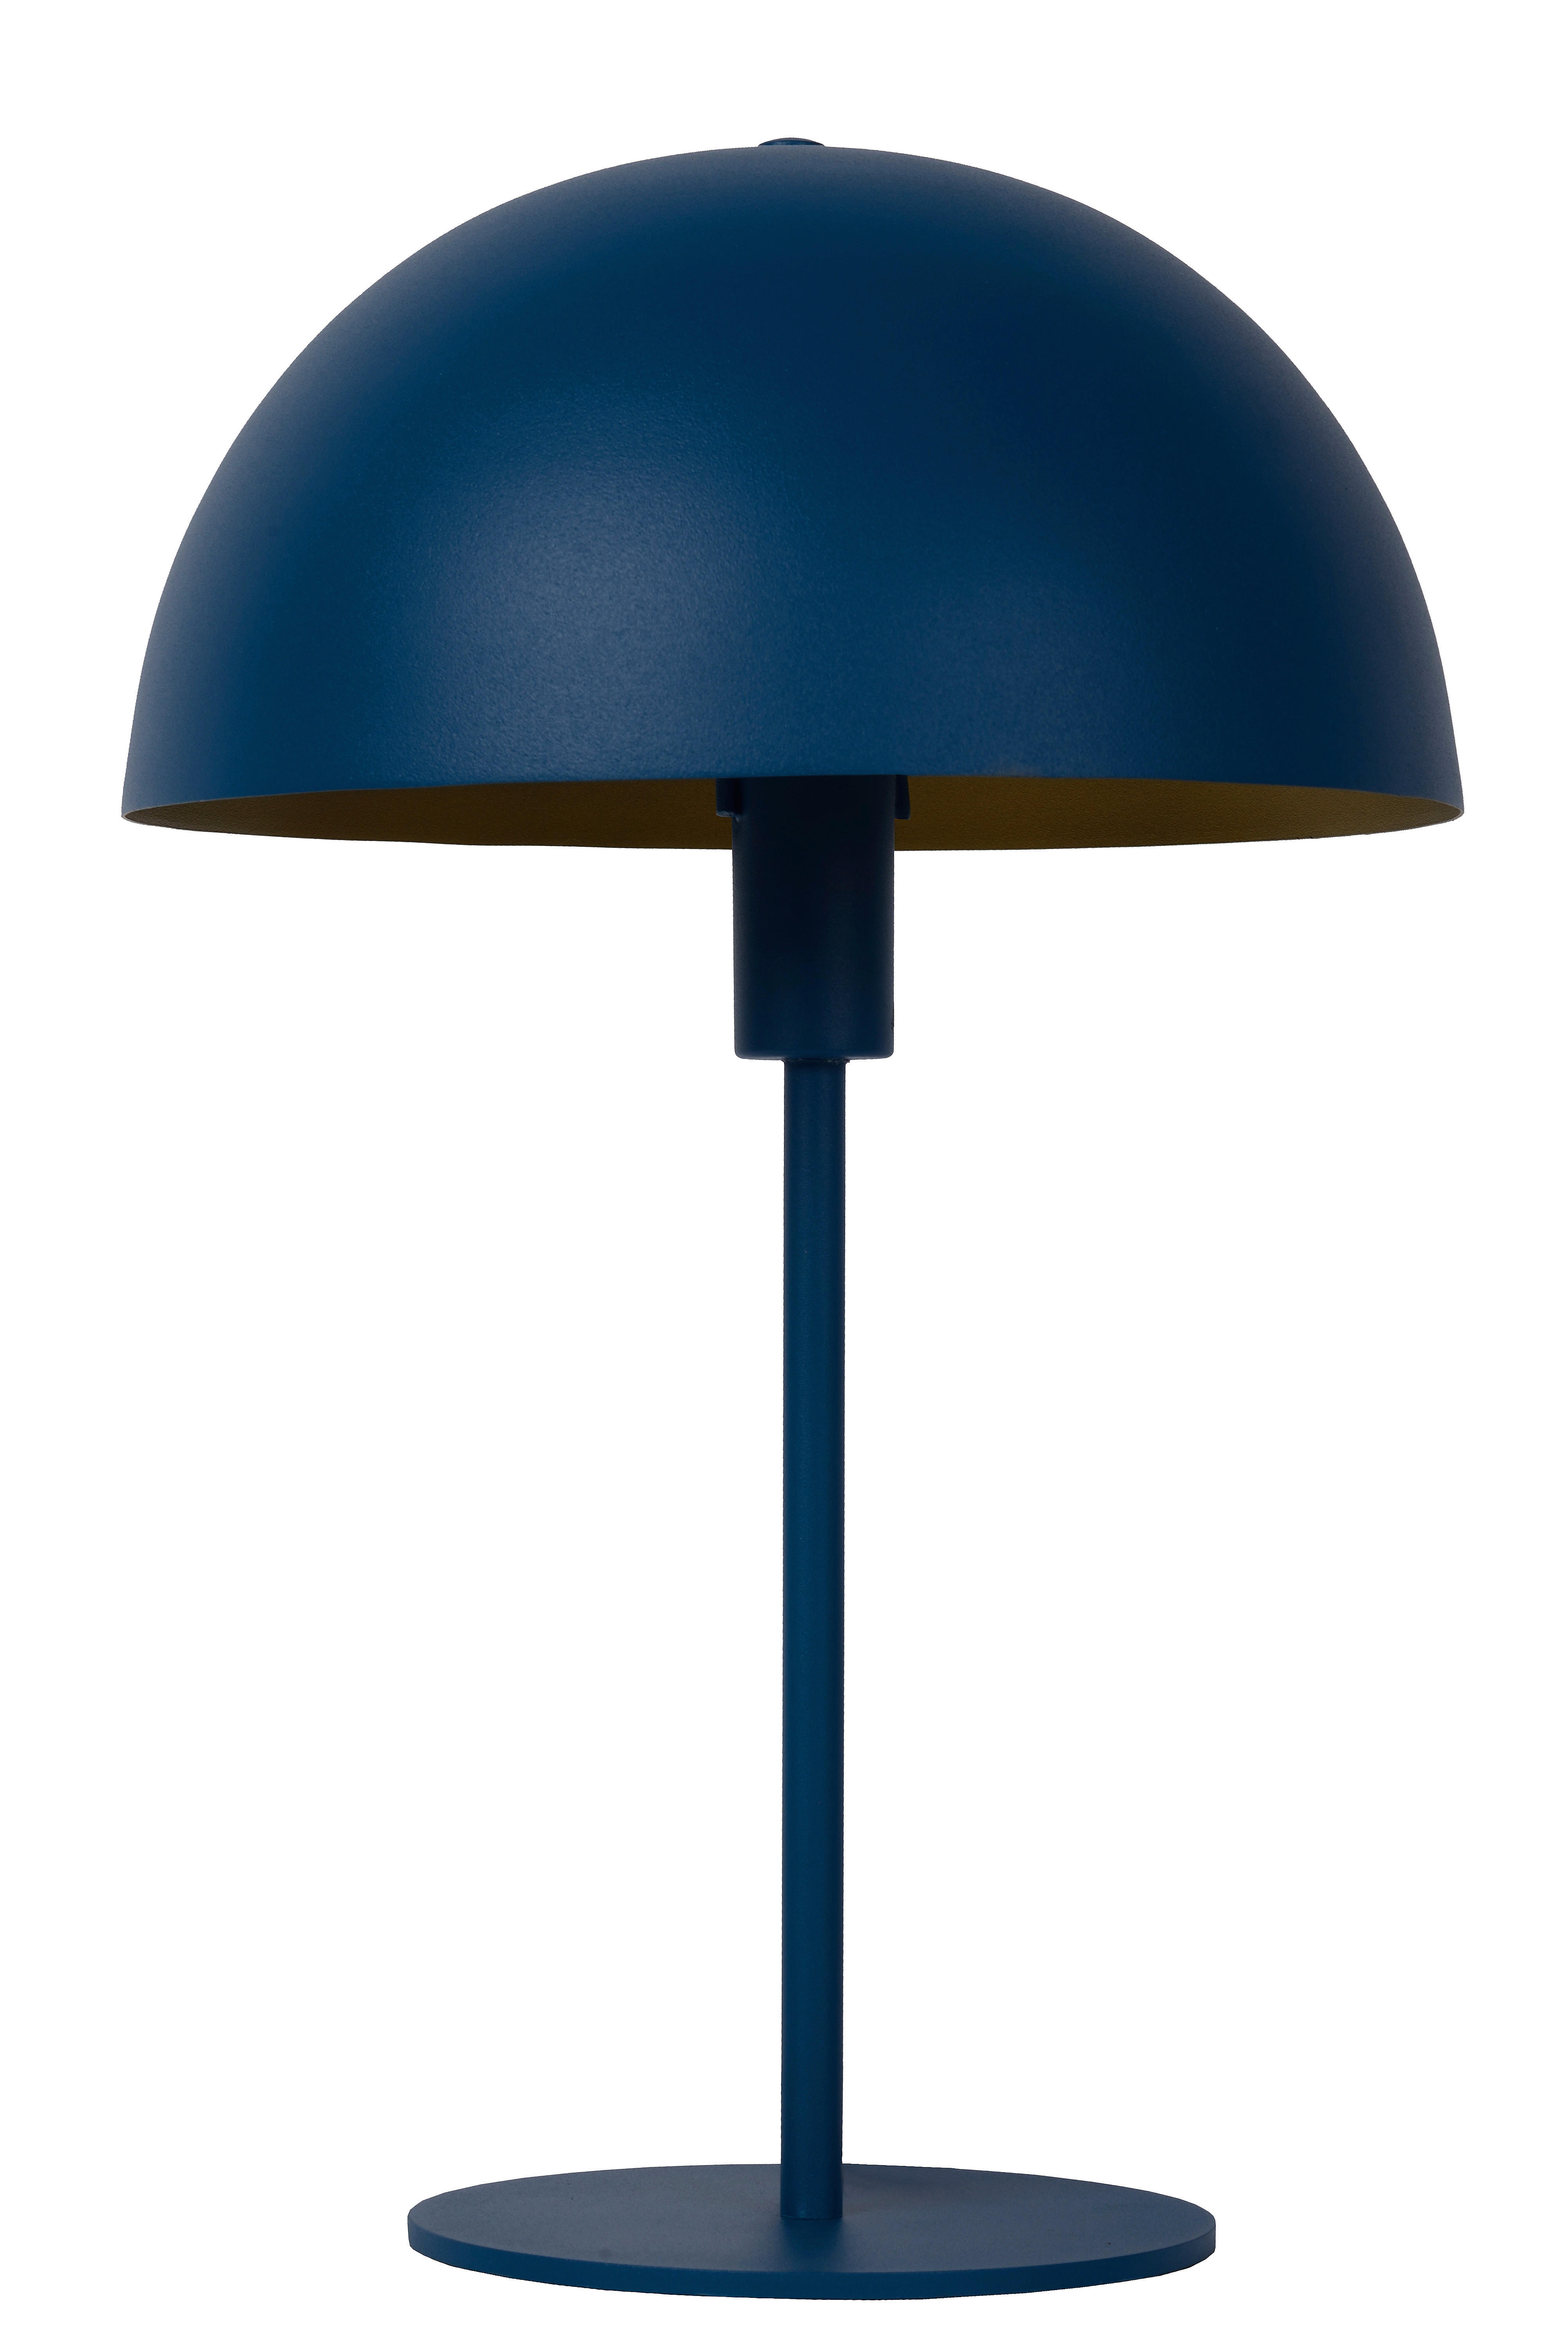 TISCHLEUCHTE SIEMON  - Blau/Messingfarben, Design, Metall (25/40cm) - Lucide